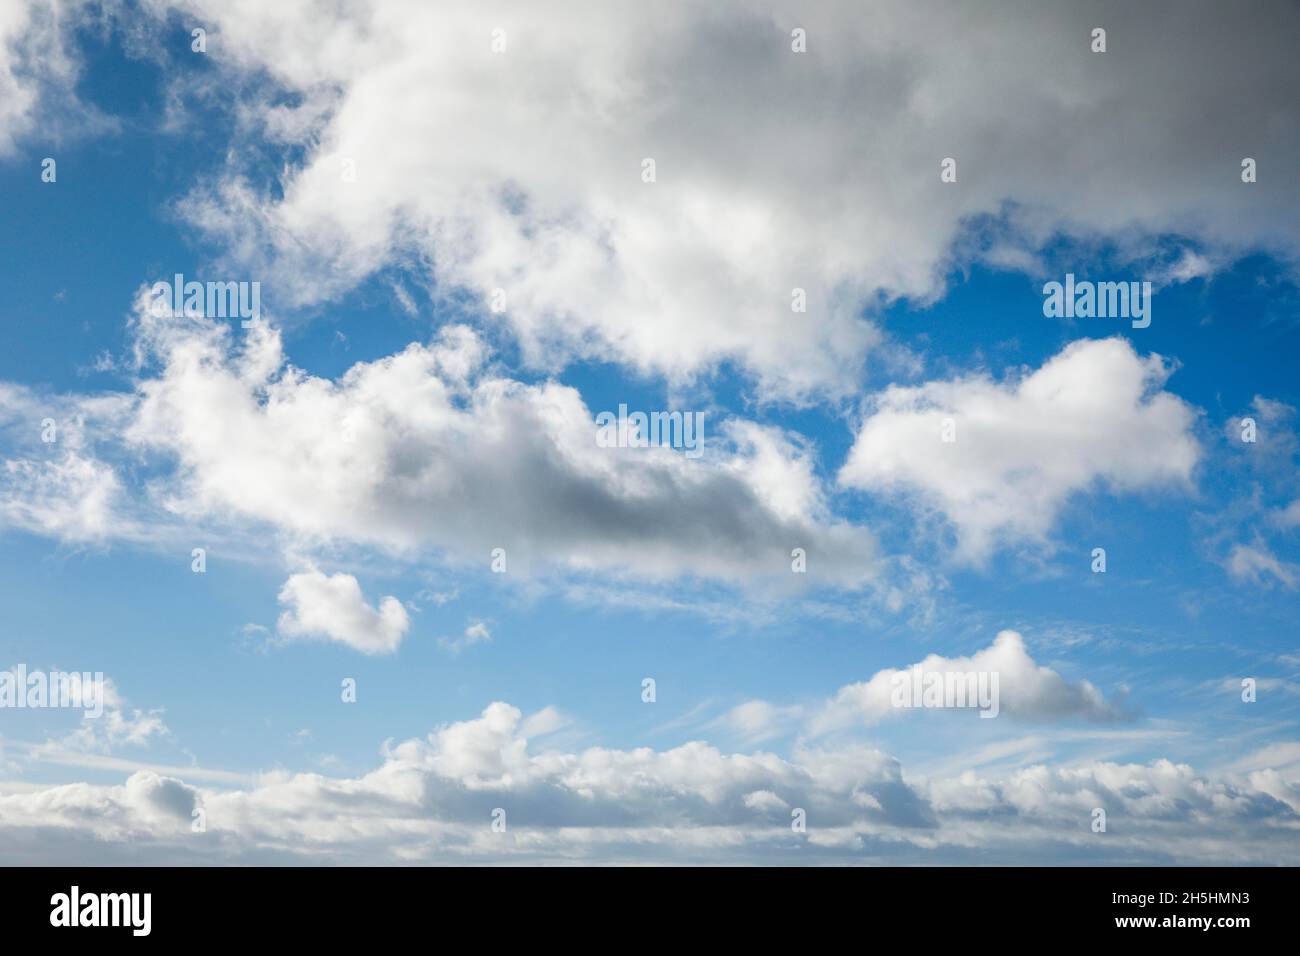 Pecora. Il velo e le nuvole (cumuli) adornano il cielo blu in forti venti Foto Stock